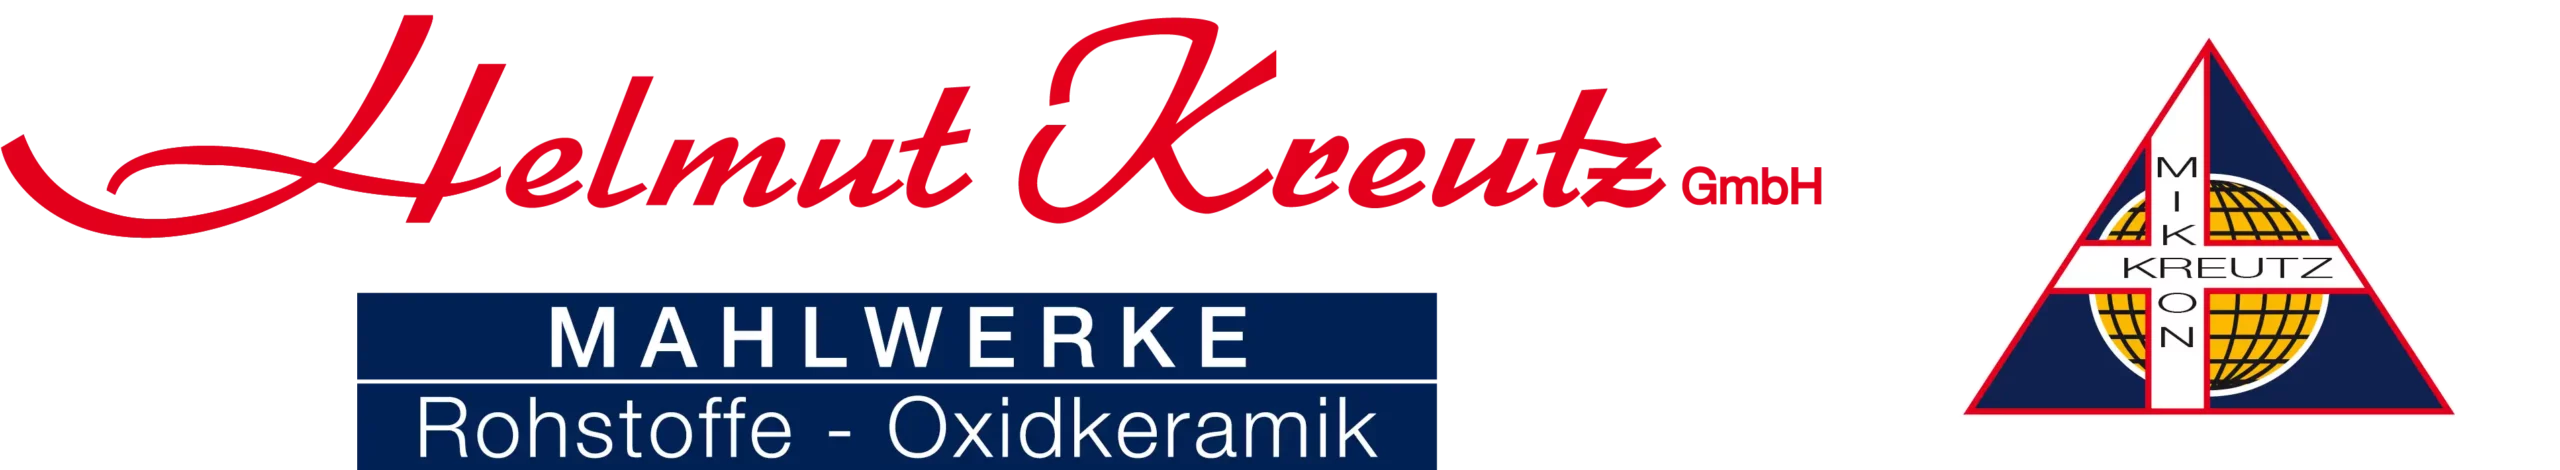 Helmut Kreutz Mahlwerke GmbH